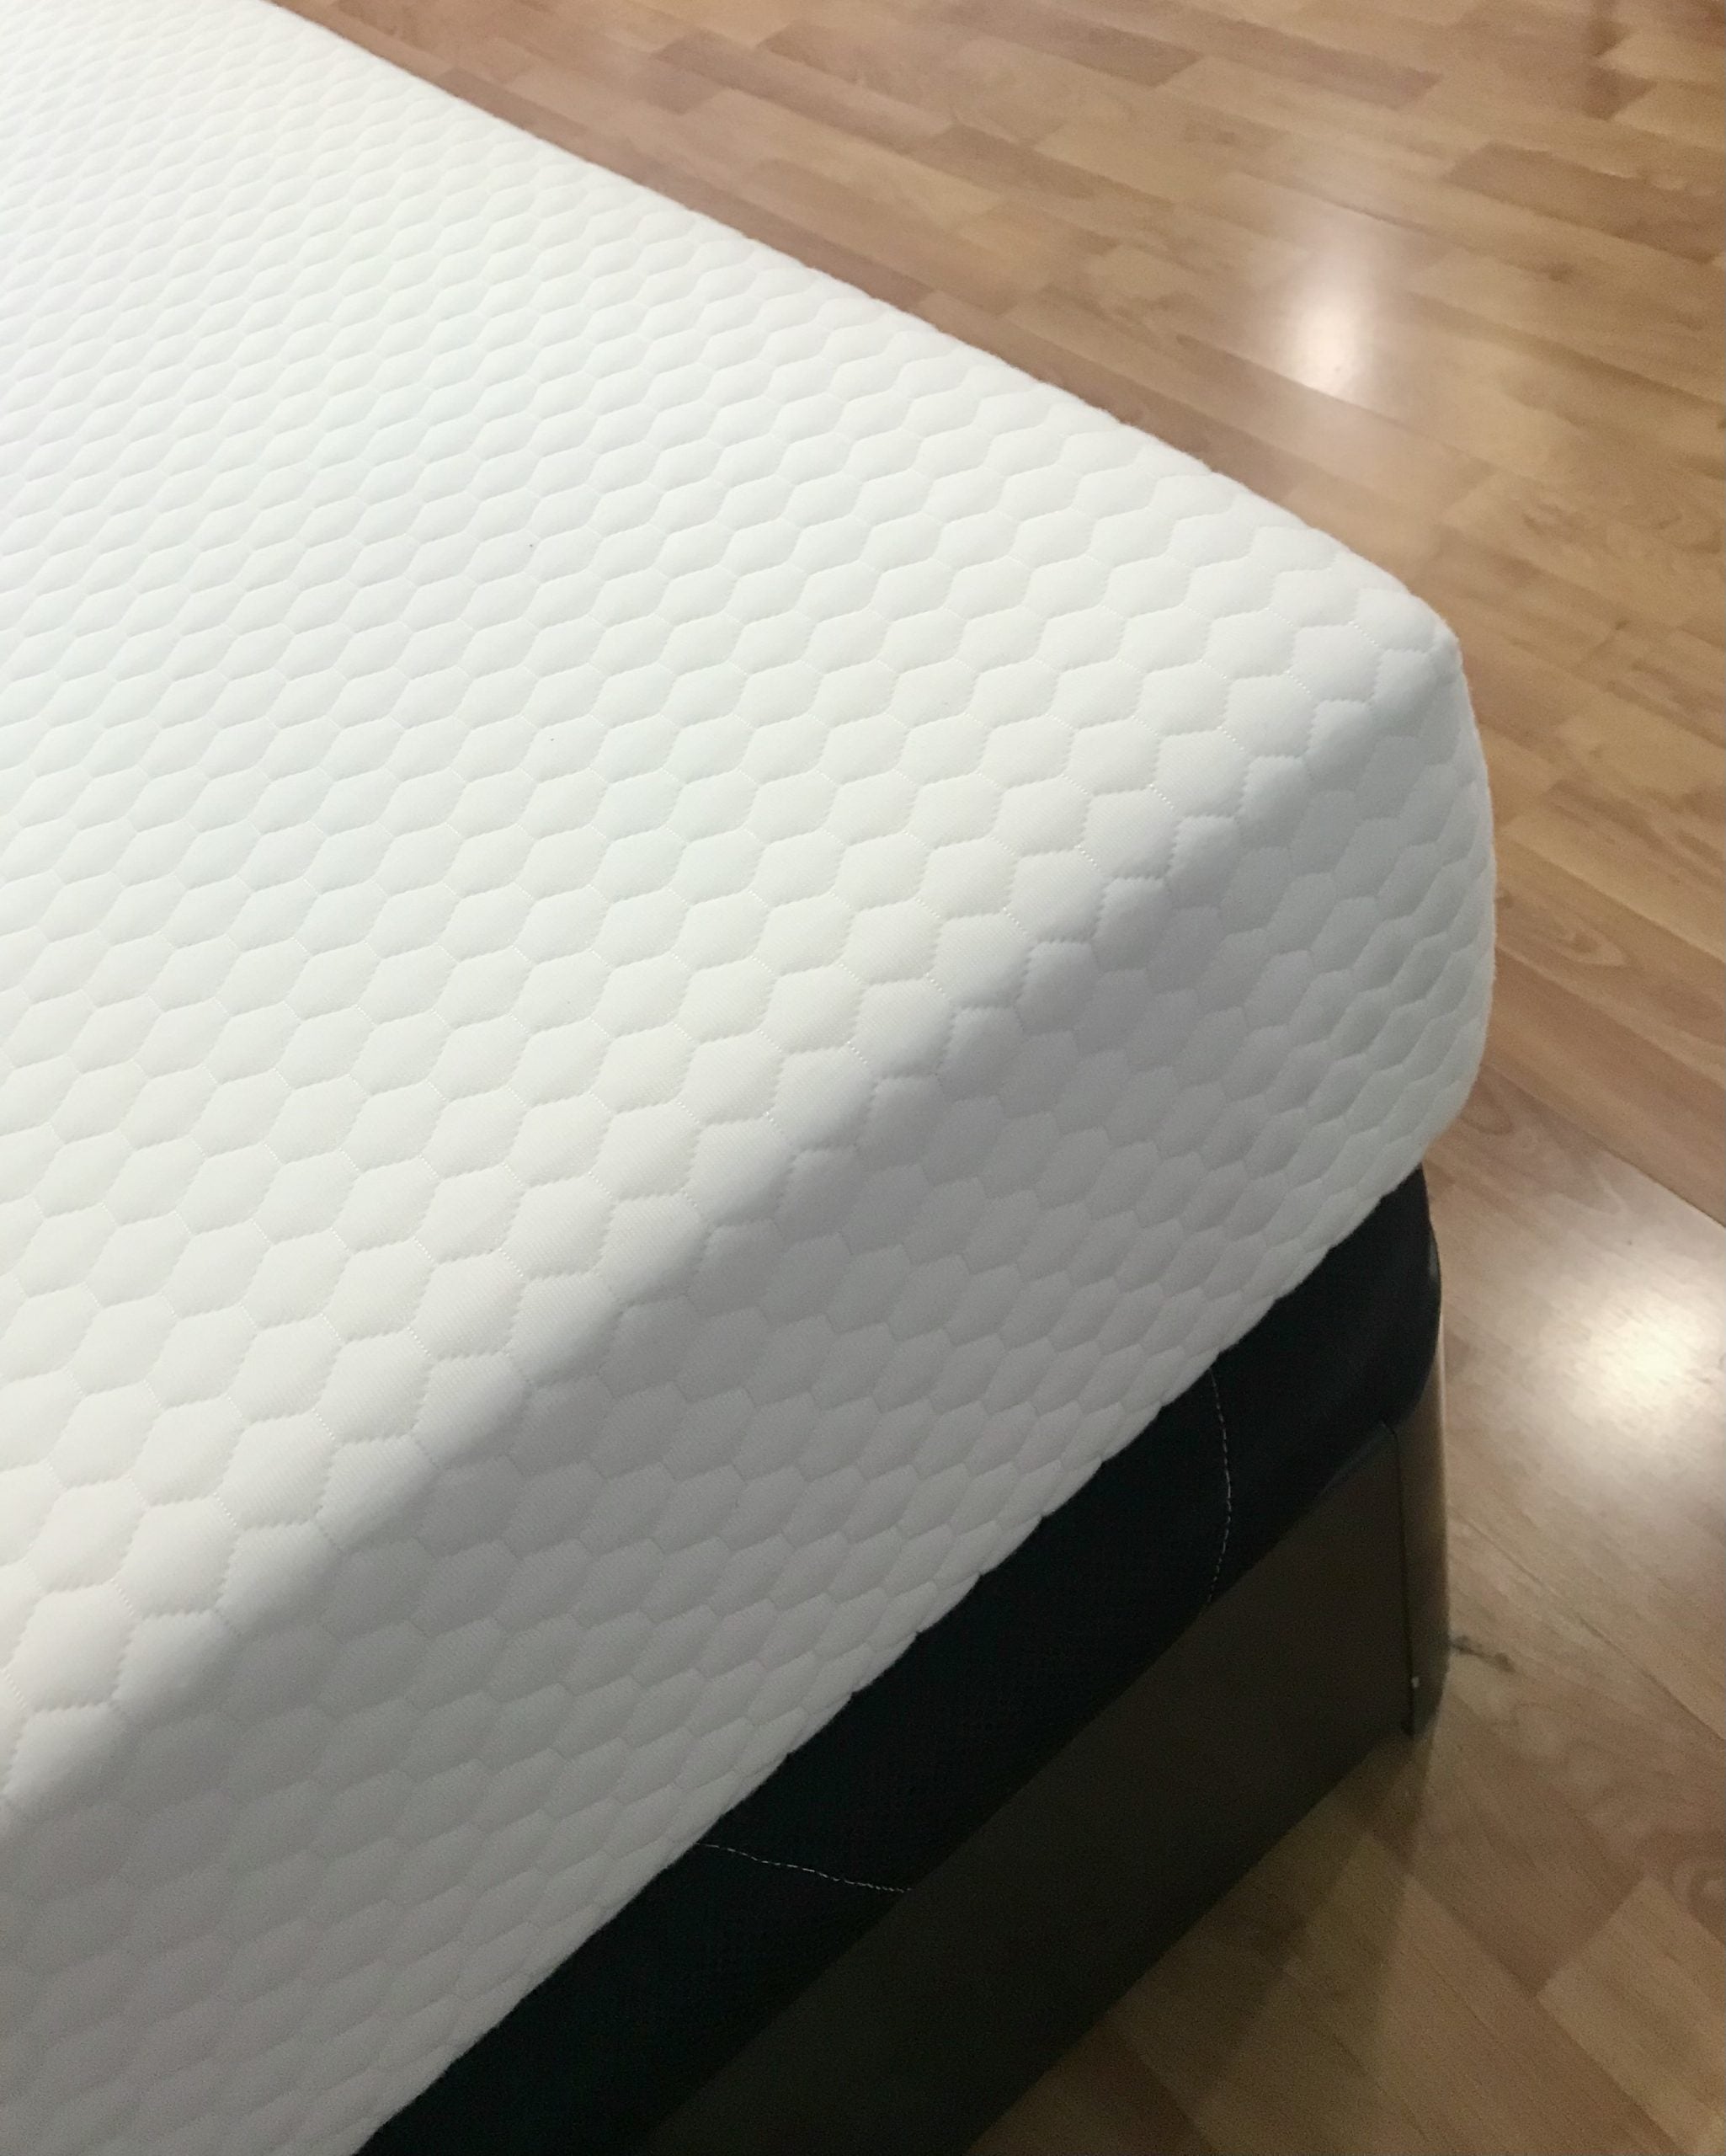 Stretch mattress cover